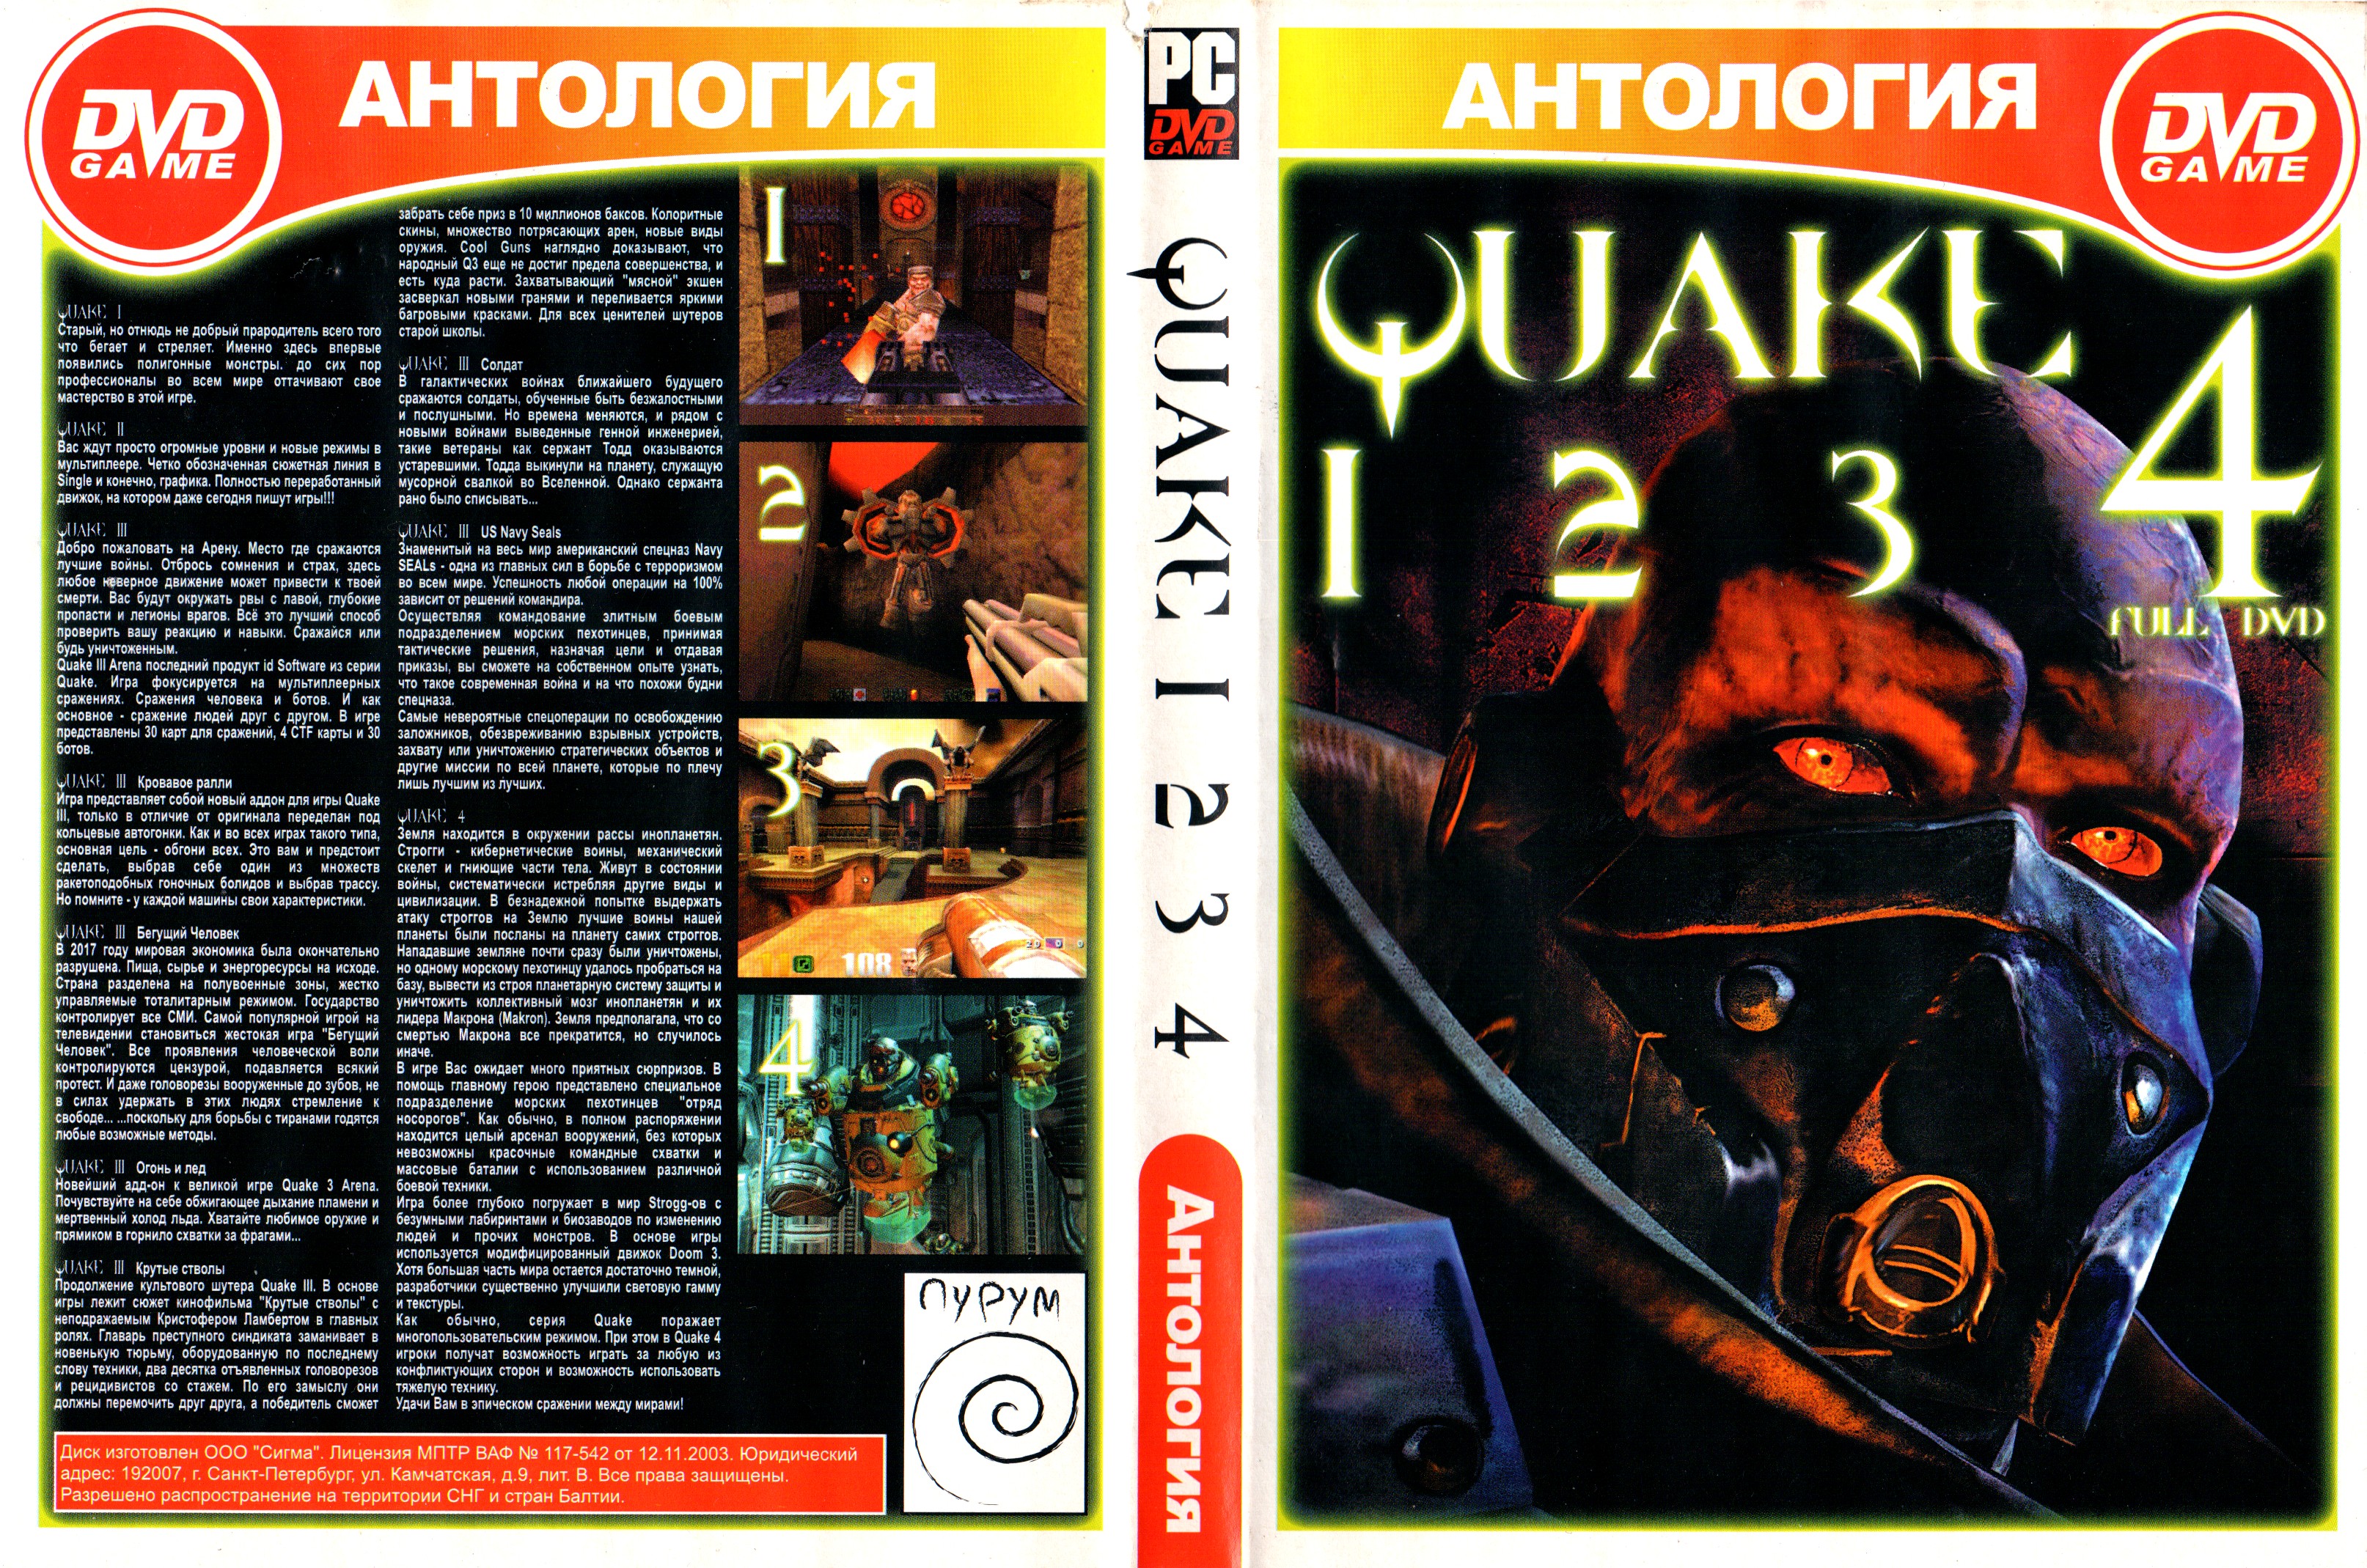 Антология перевод. Quake антология диск. Quake 1996 диск. Quake 4 коробка DVD Box. Антология старых игр.